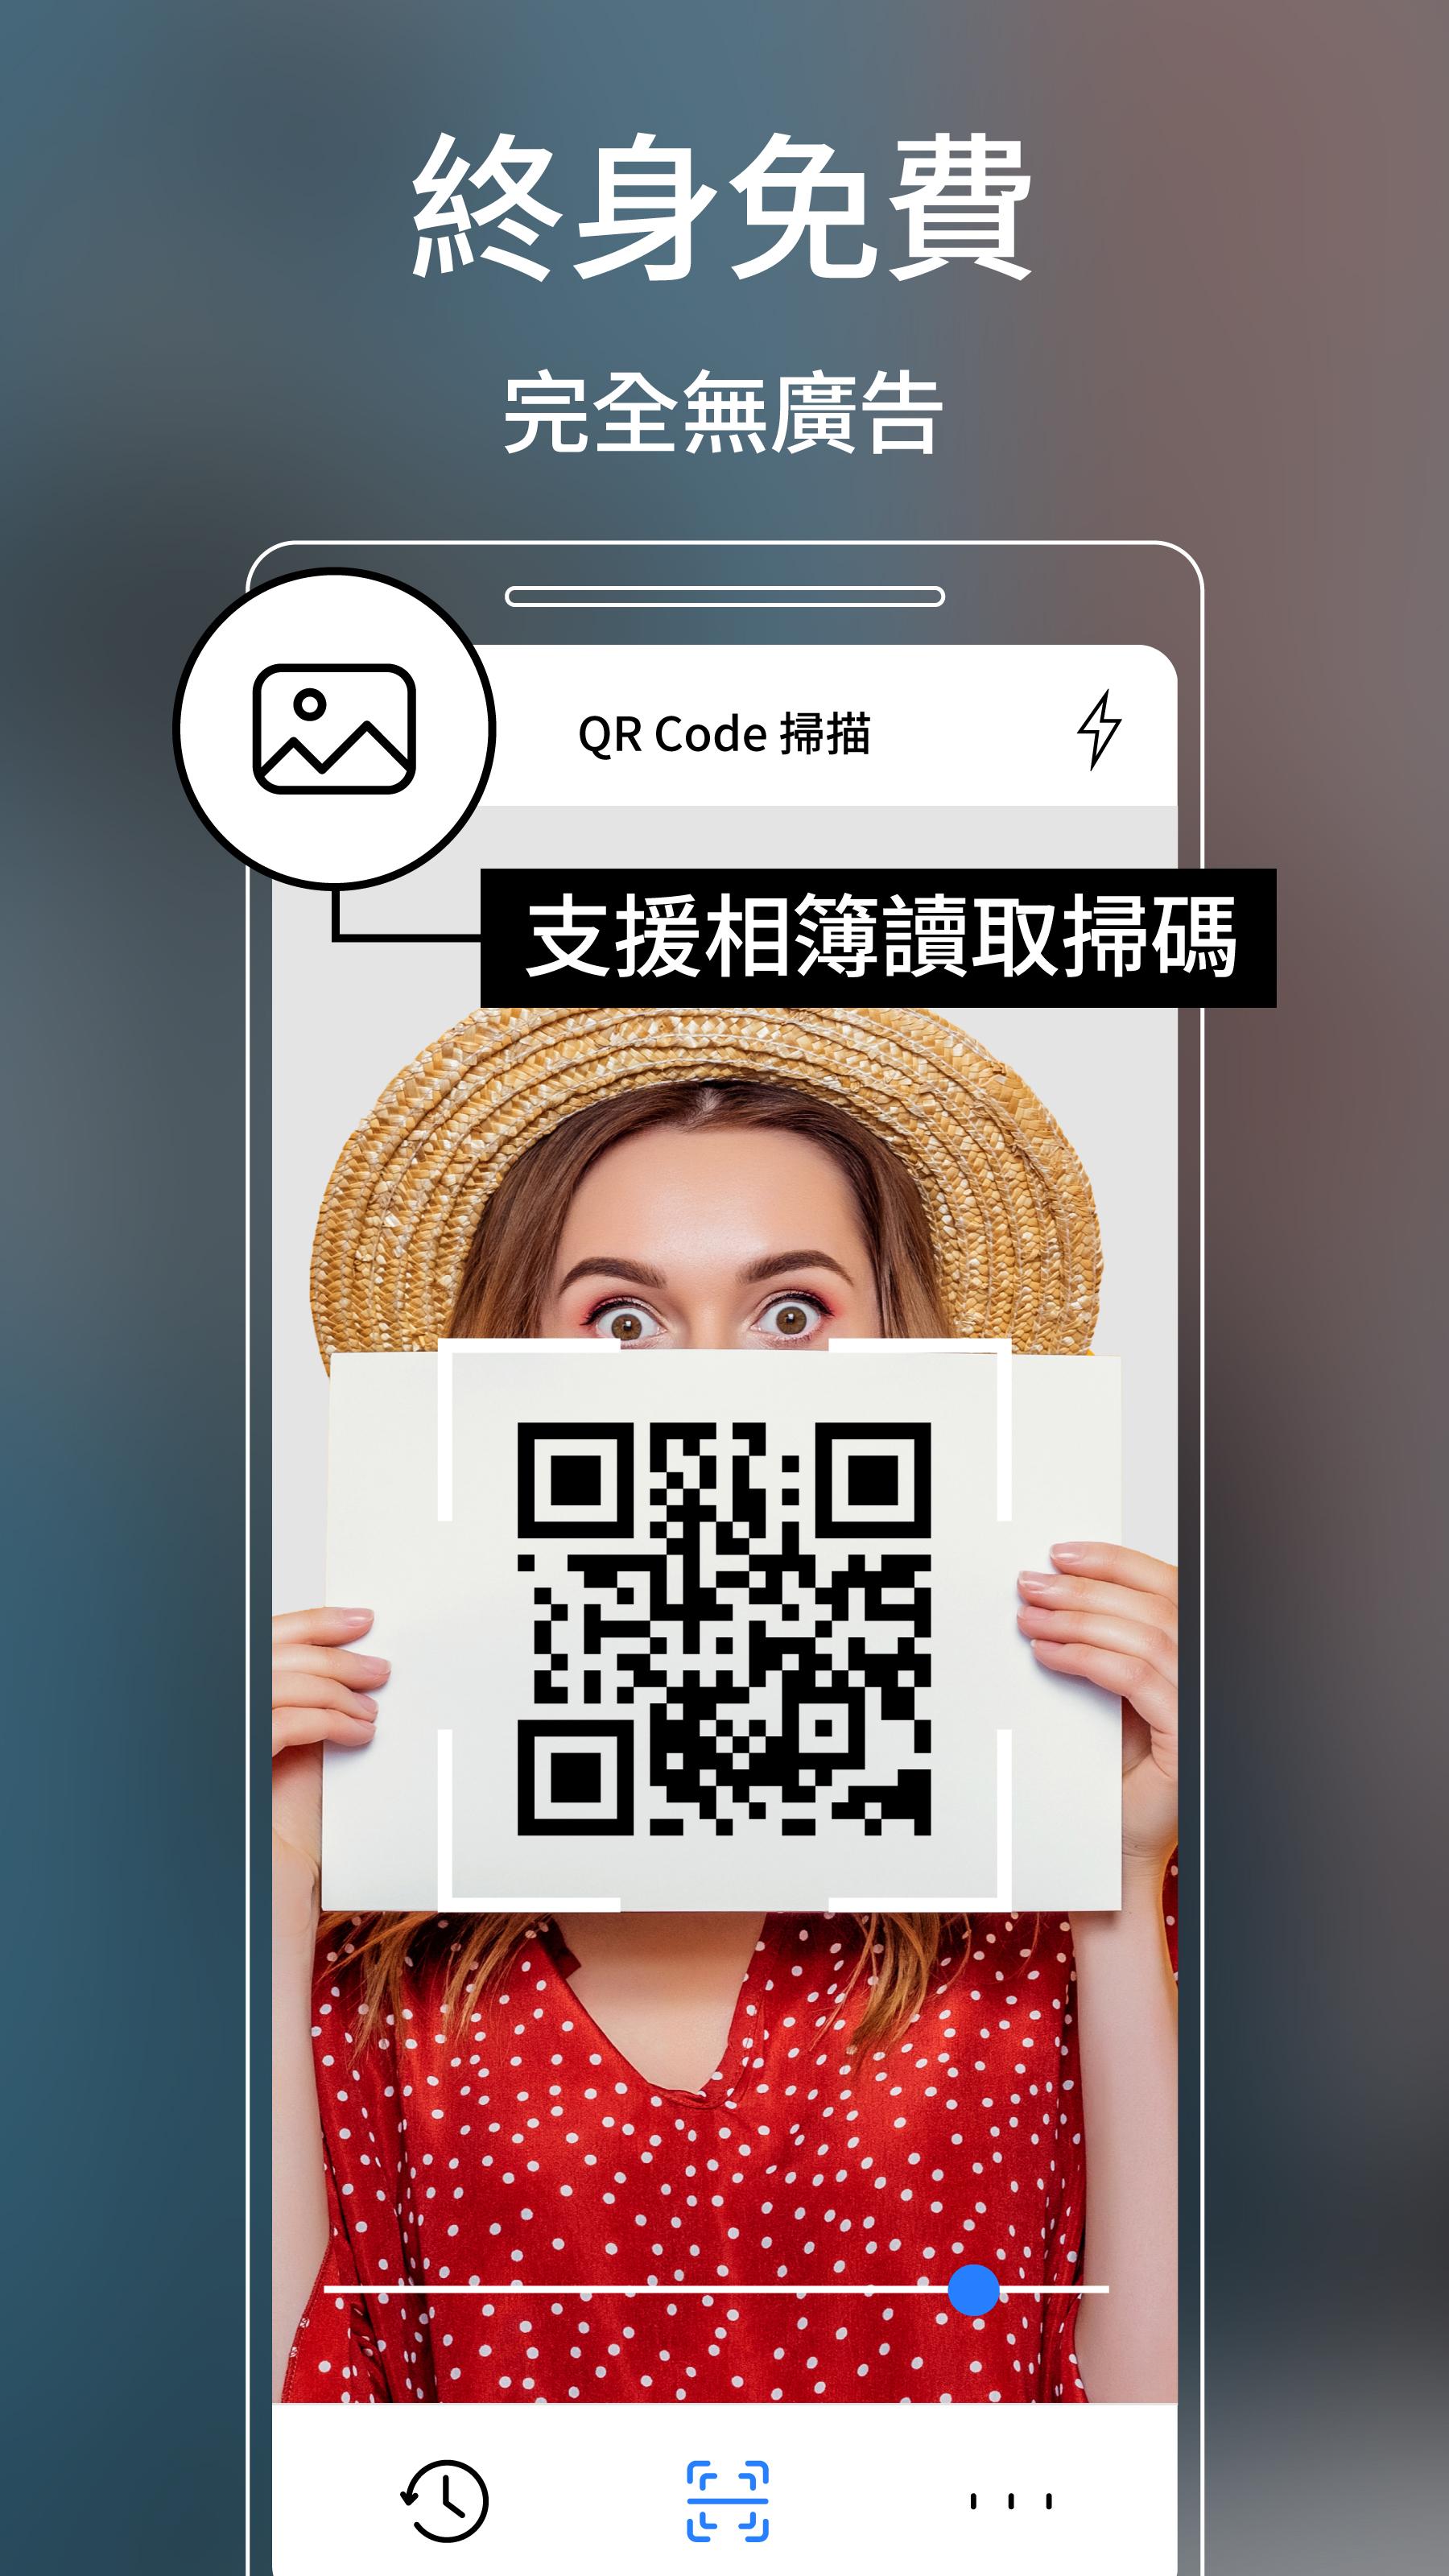 免費qr Code 條碼掃描器 繁體中文安卓下載 安卓版apk 免費下載